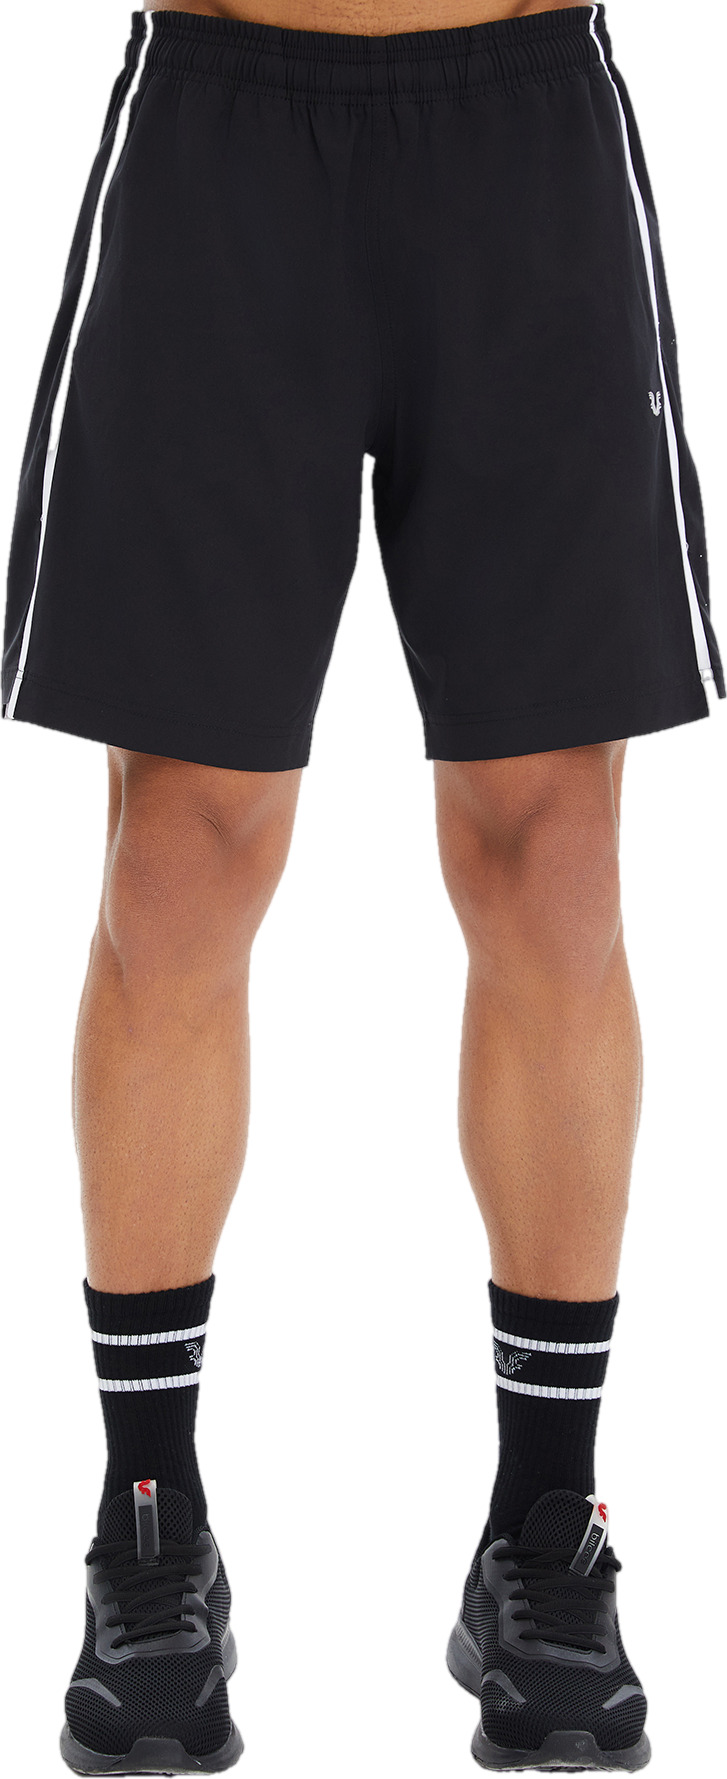 Спортивные шорты мужские Bilcee Men Woven Shorts черные L